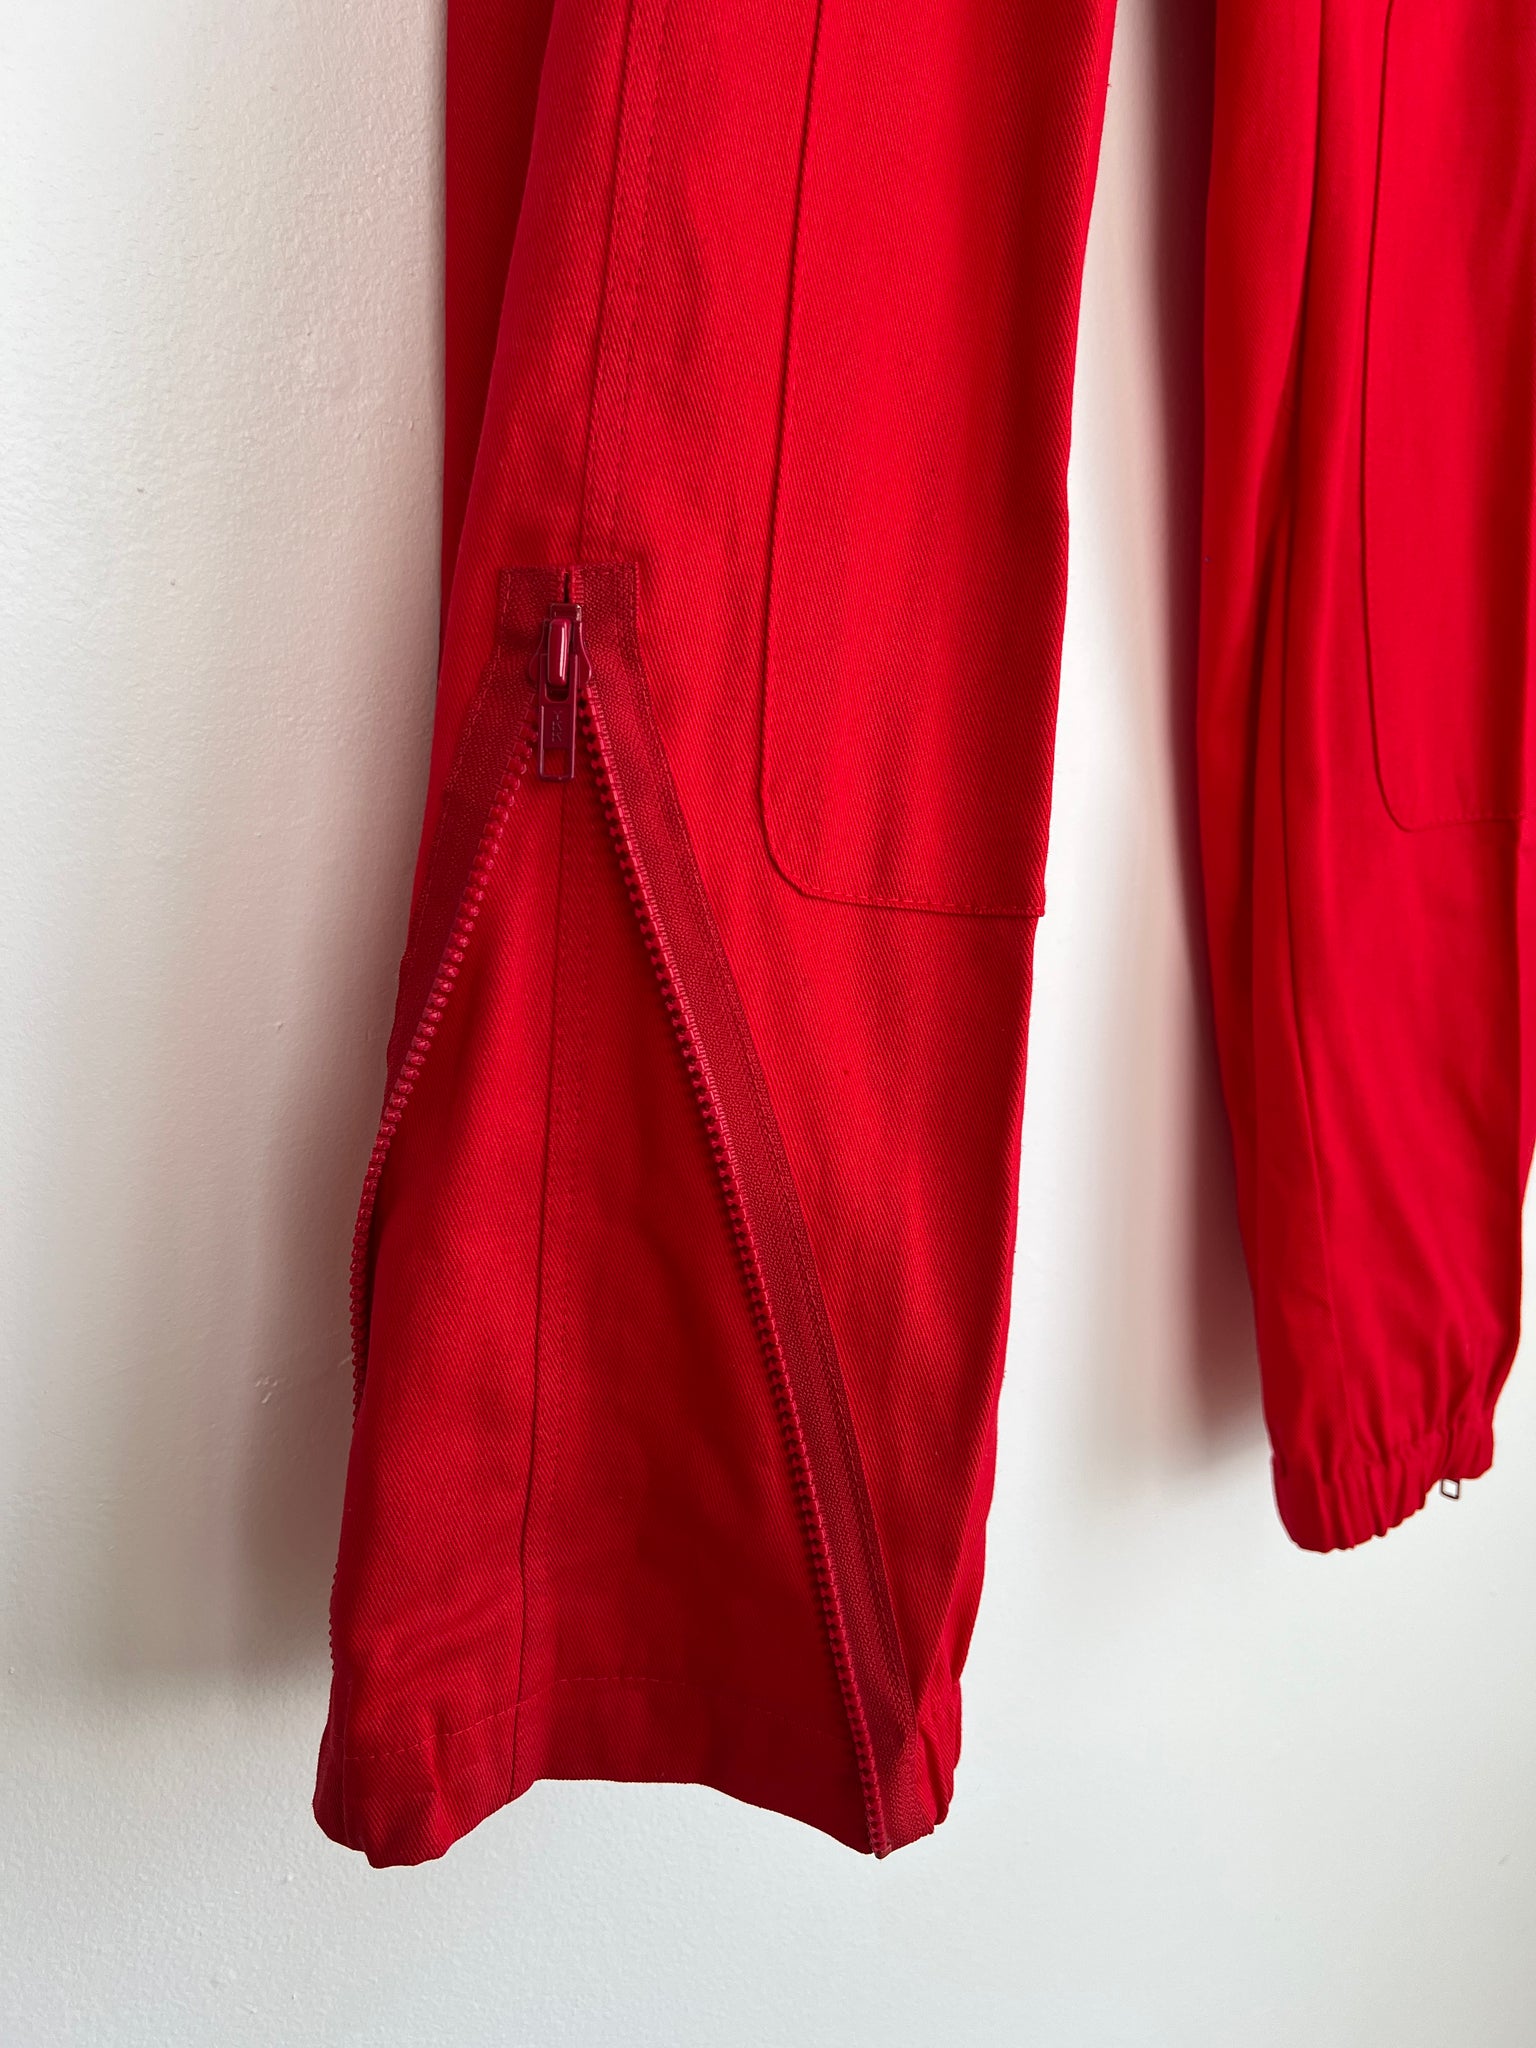 1980s PANTS- red drawstring w/ zipper detail at elastic hem